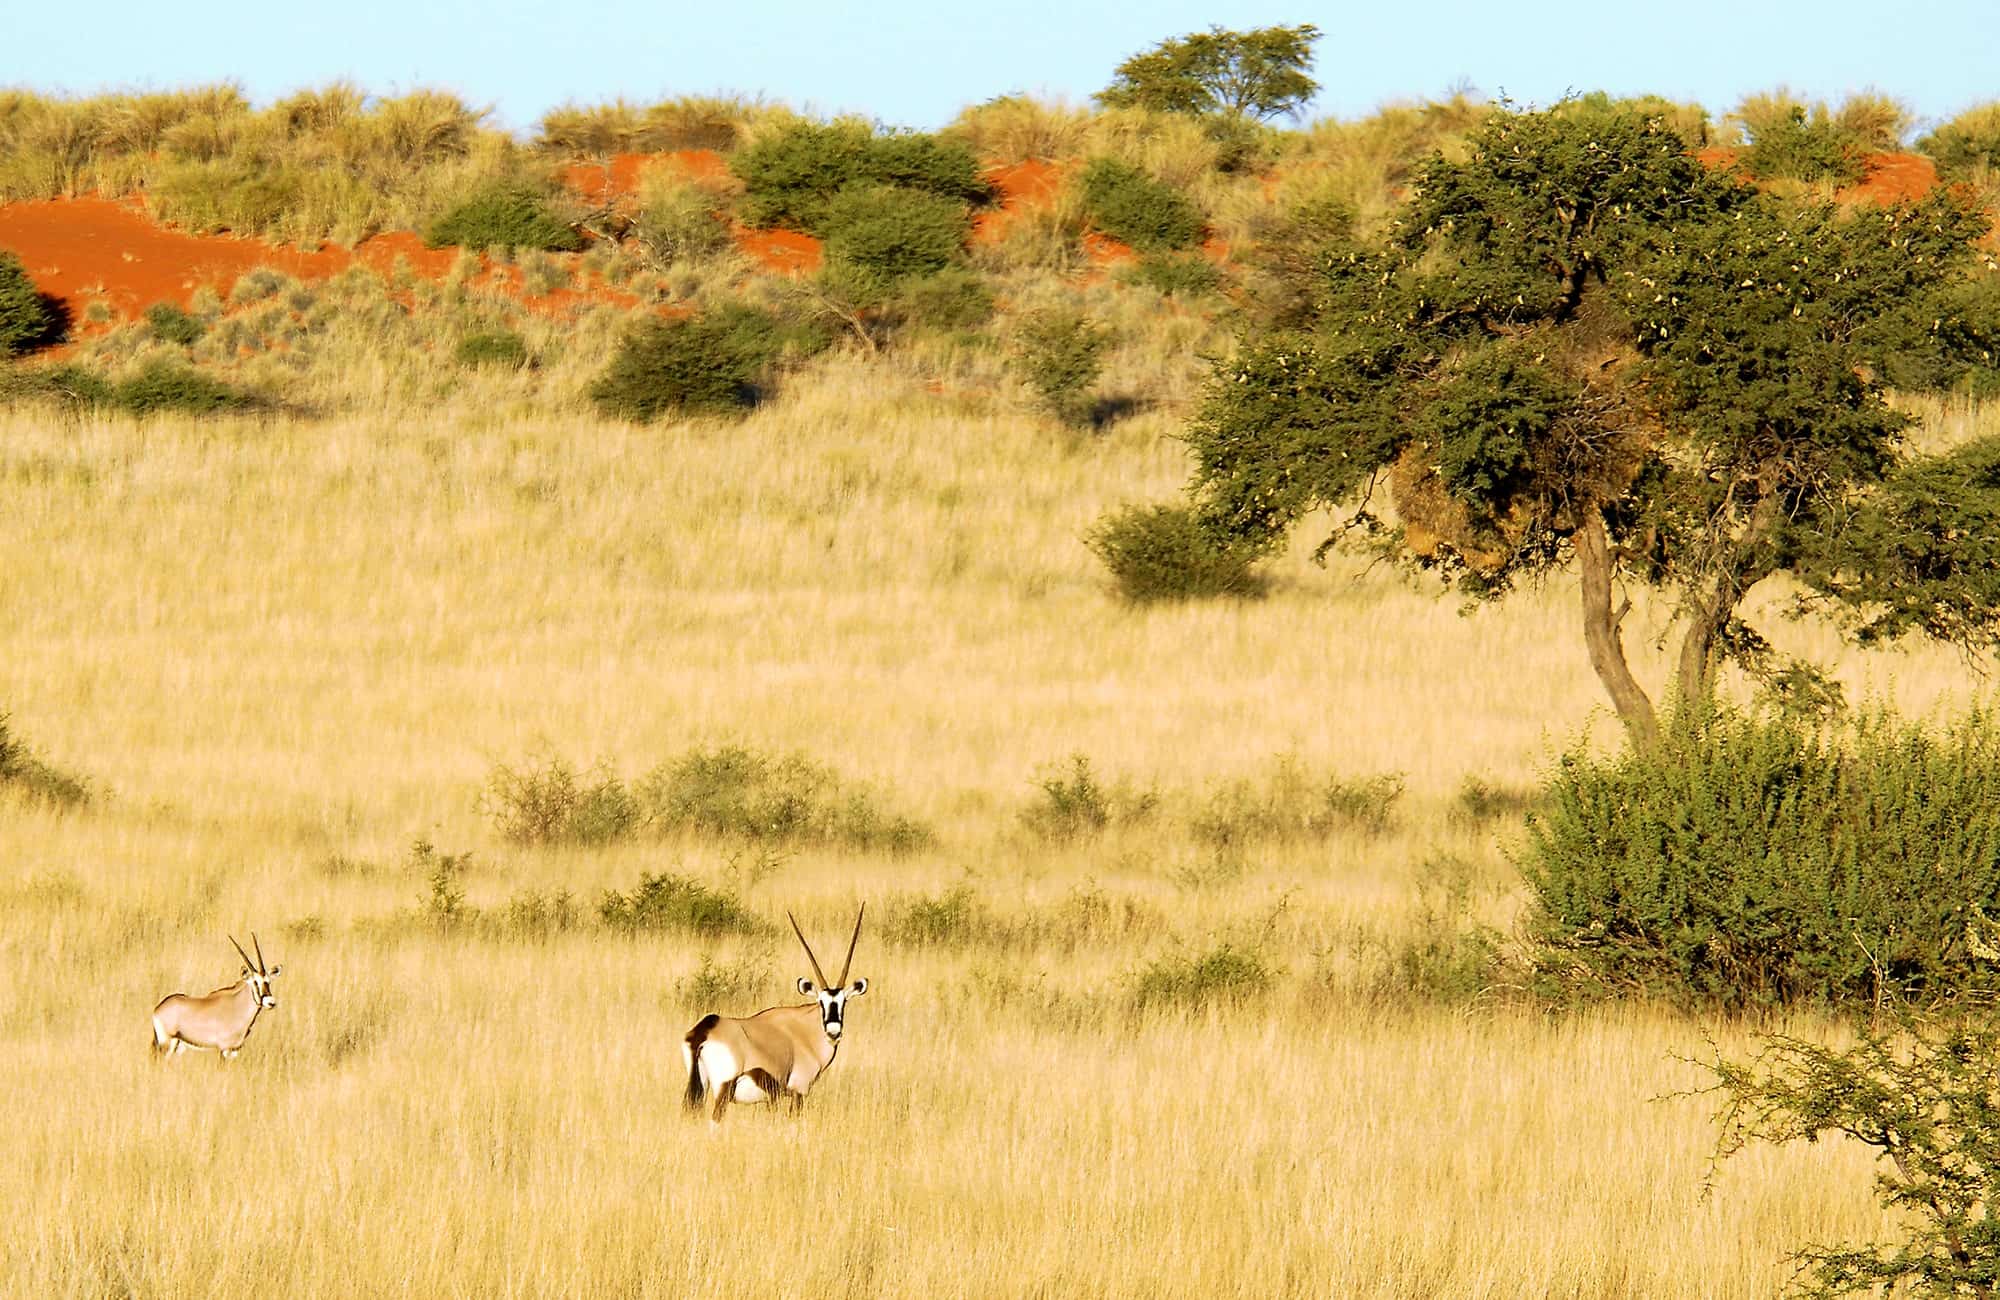 Kalahari Oryx's